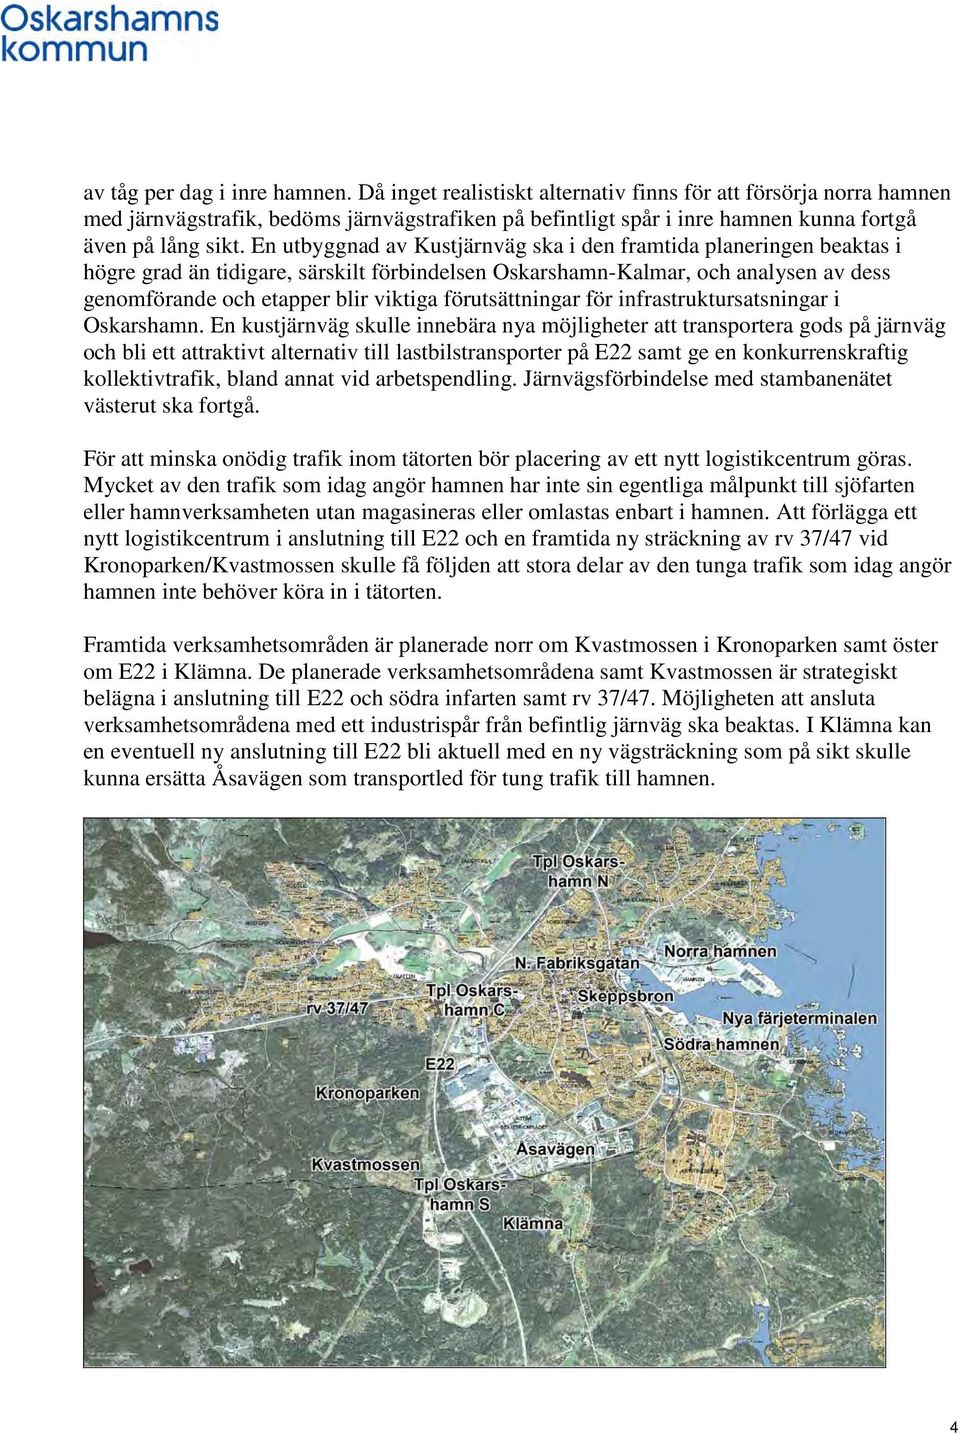 En utbyggnad av Kustjärnväg ska i den framtida planeringen beaktas i högre grad än tidigare, särskilt förbindelsen Oskarshamn-Kalmar, och analysen av dess genomförande och etapper blir viktiga